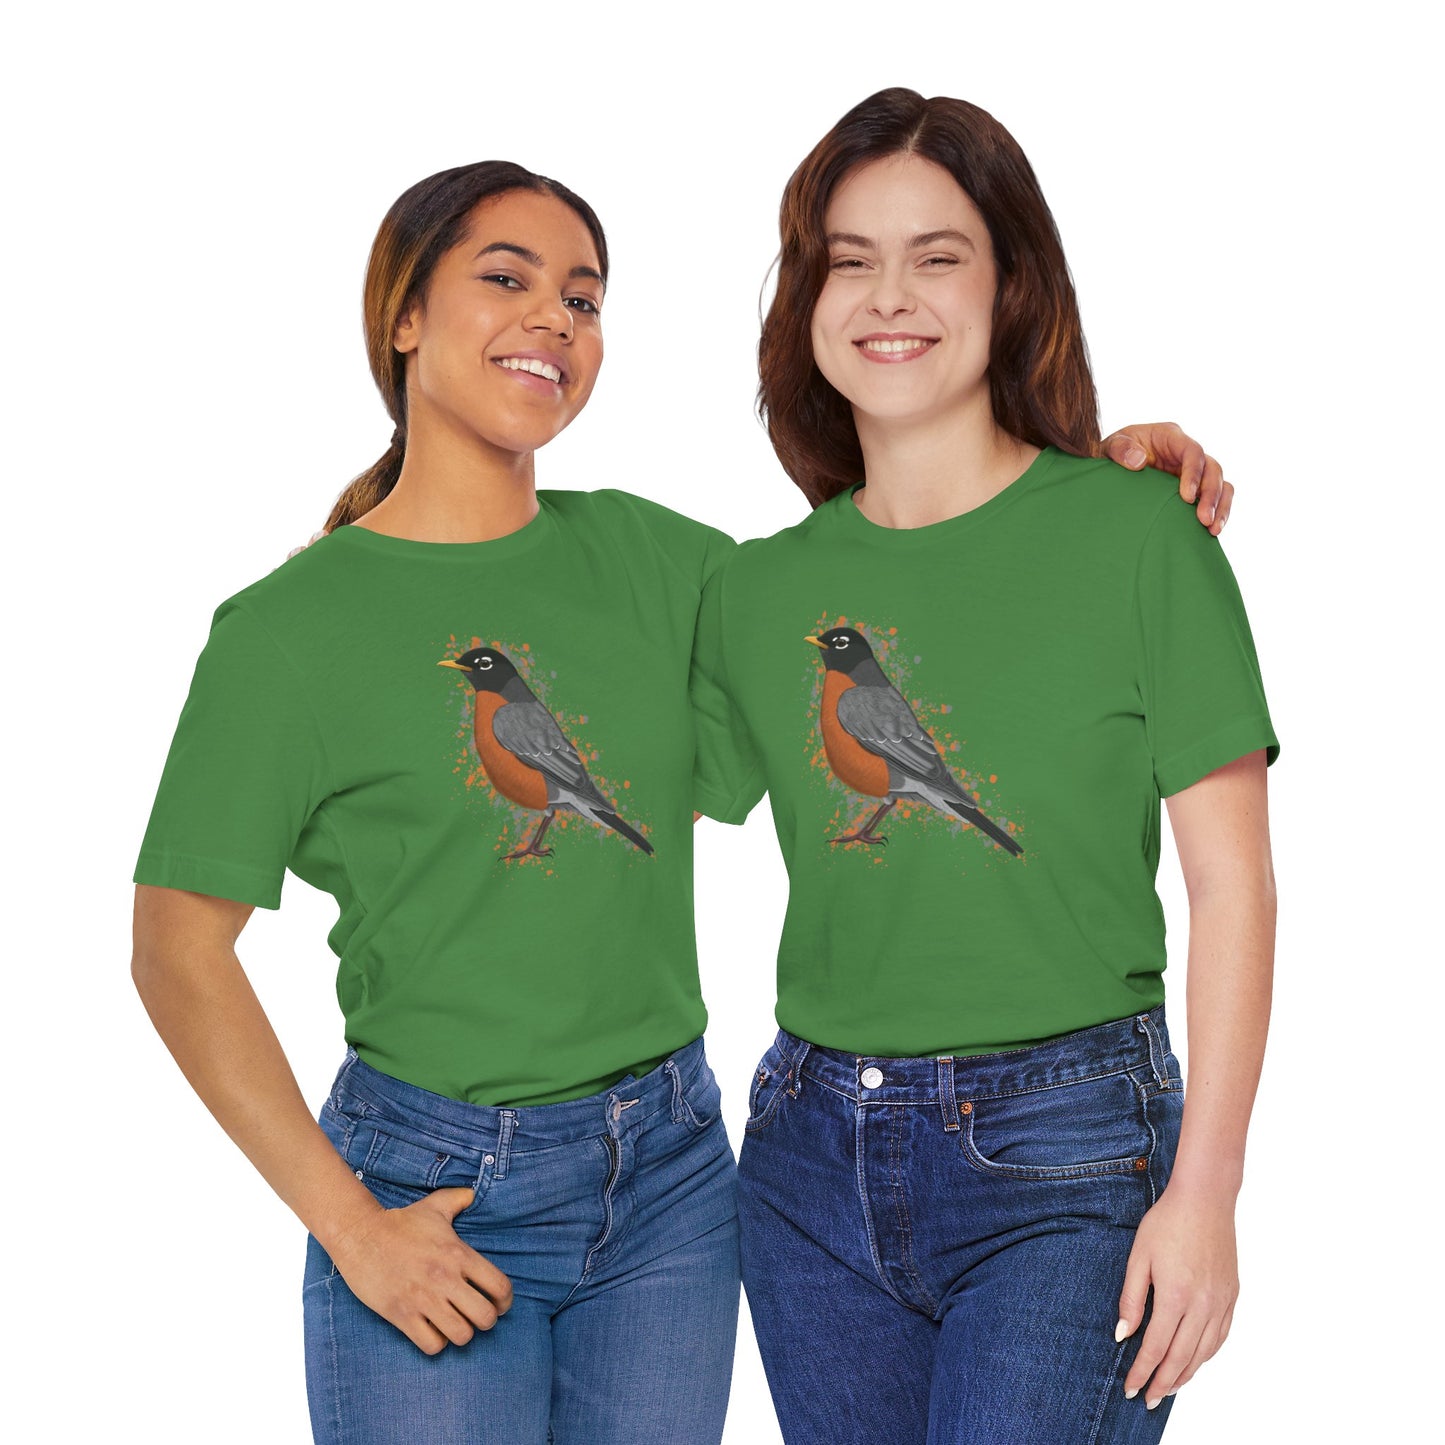 American Robin Bird T-Shirt